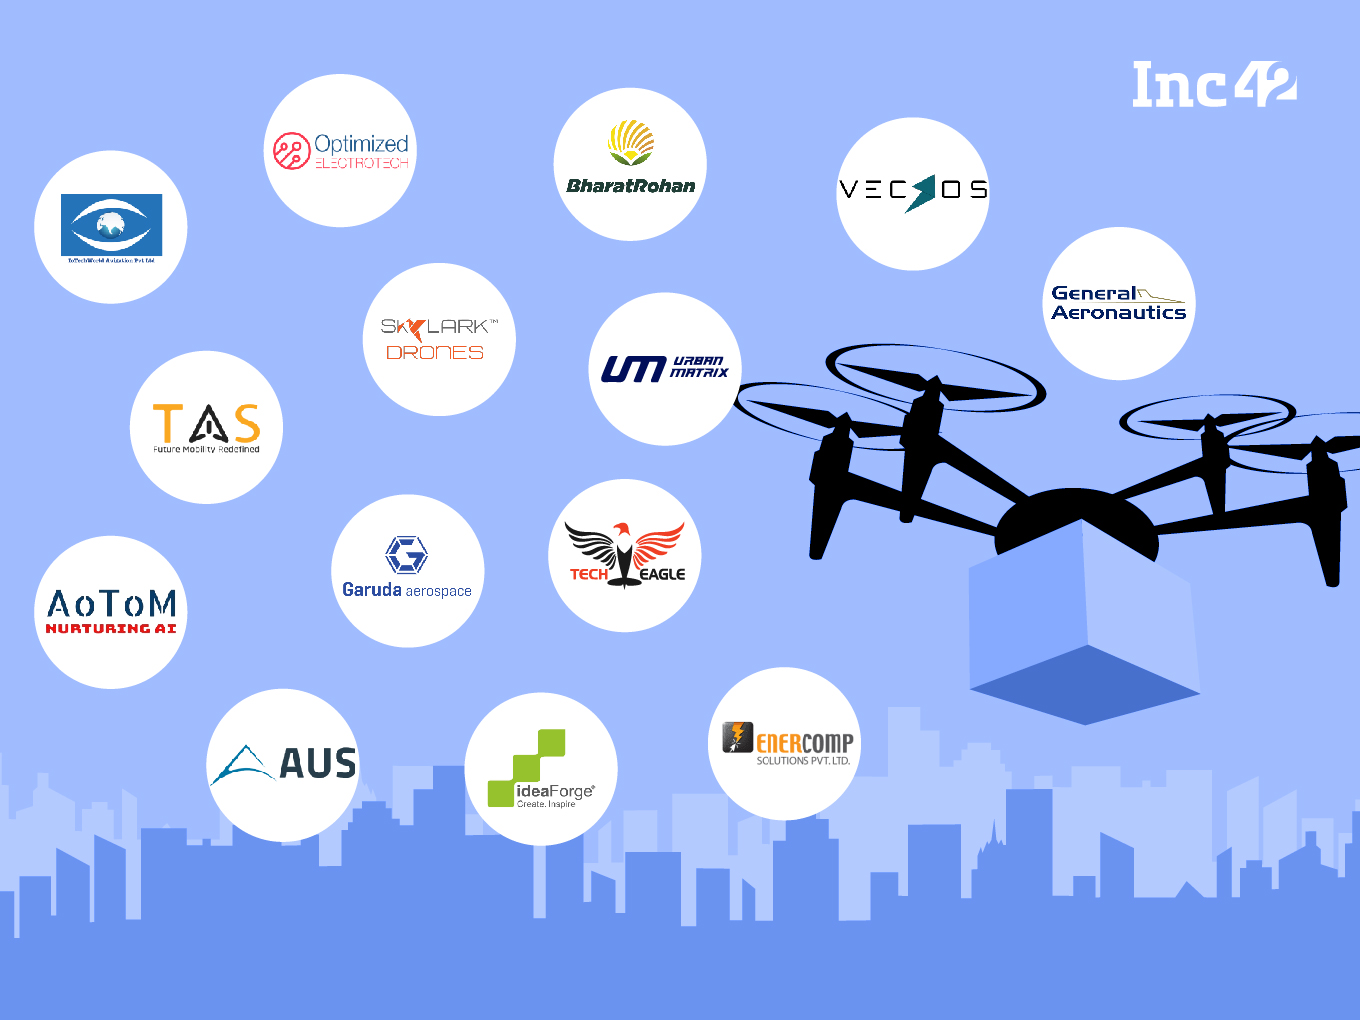 Ocupar combinación imagina Eyes In The Sky: 16 Drone Startups in India Looking For A Major Pie